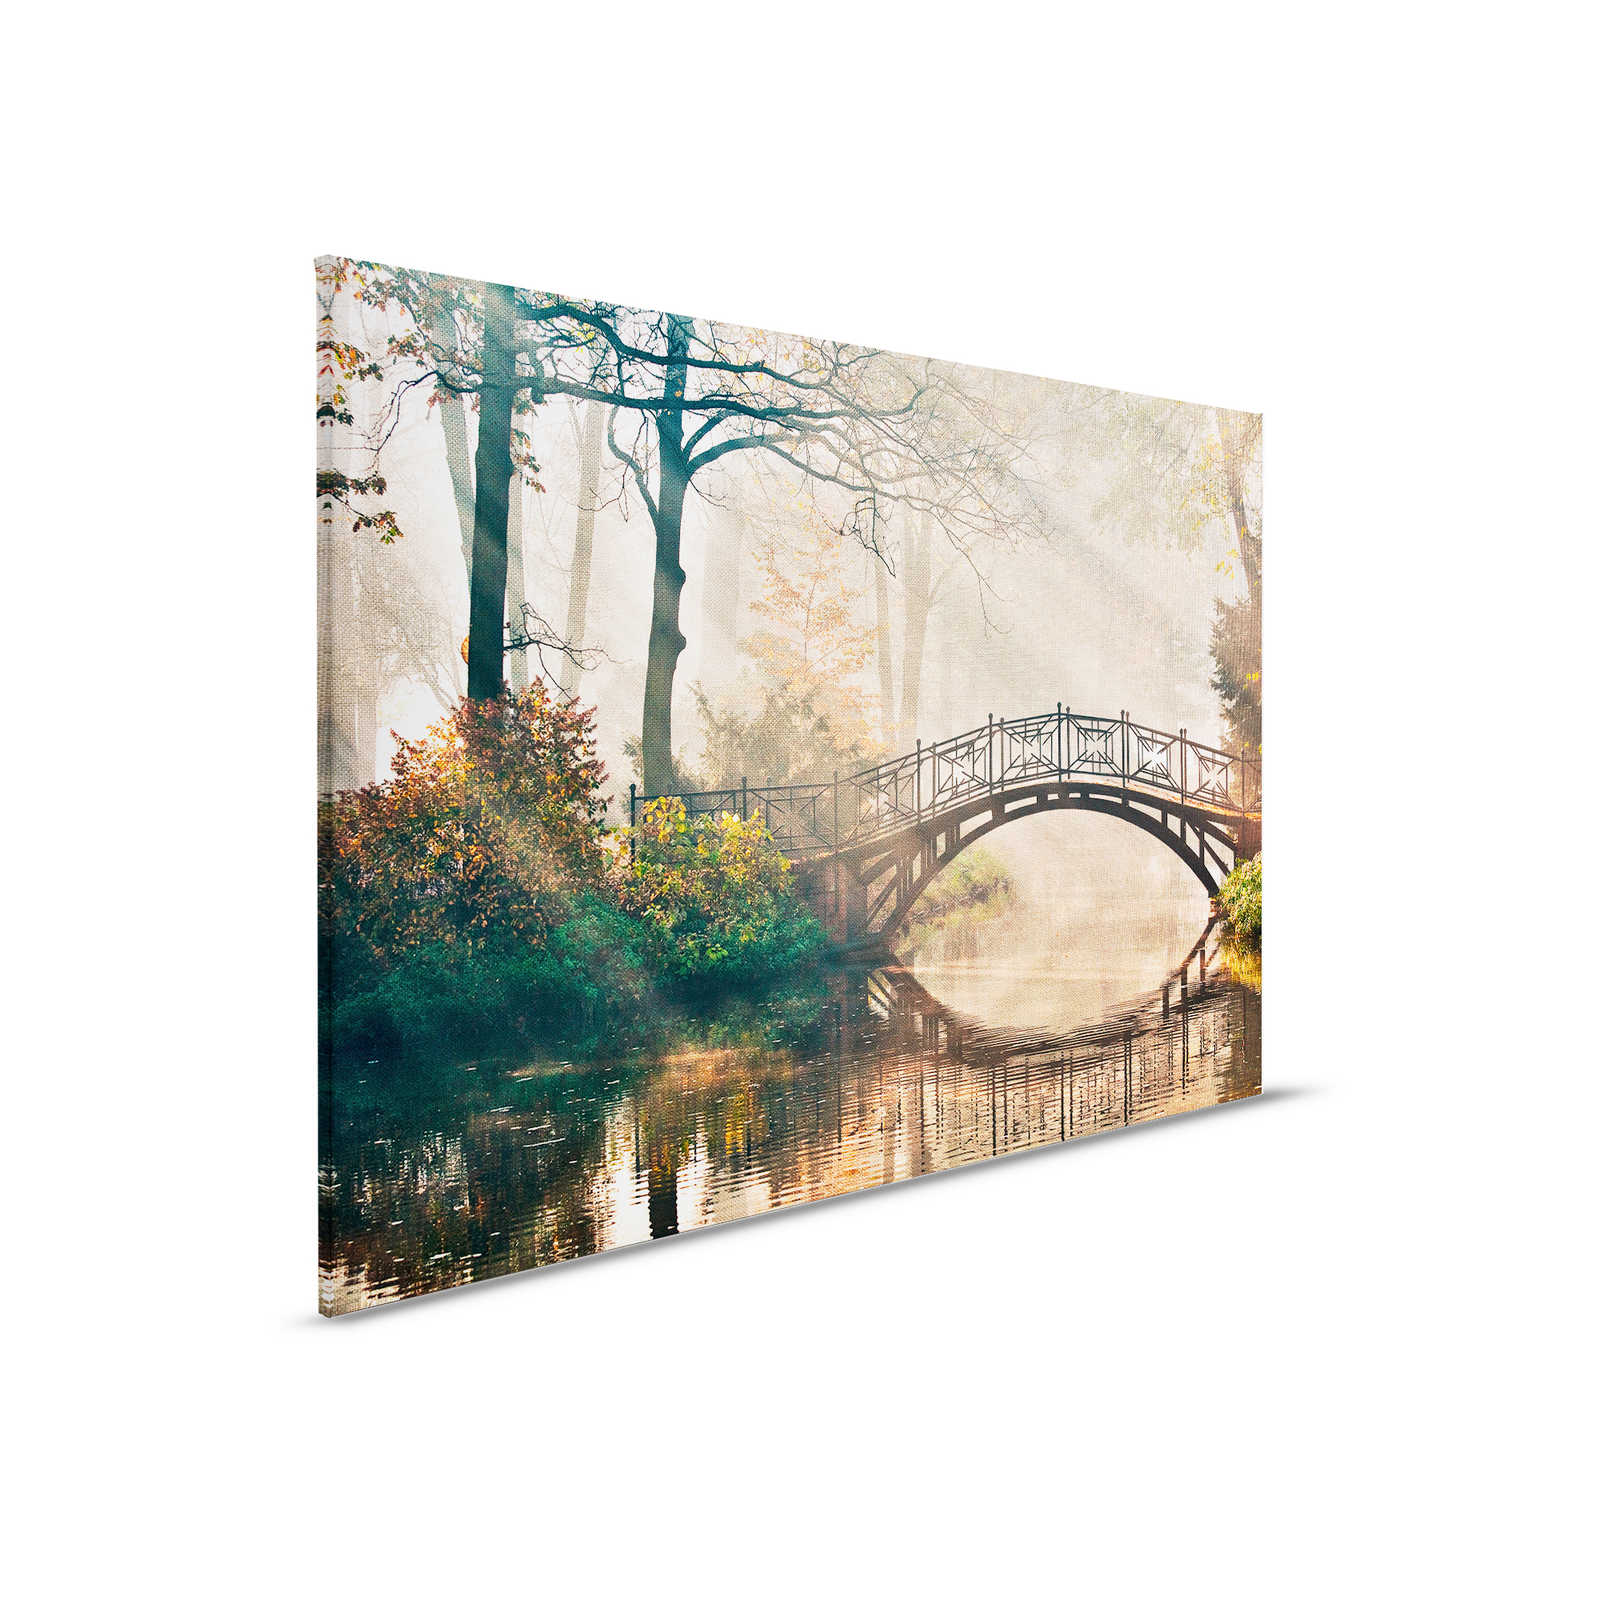         Leinwand mit Brücke über einen Fluss im Laubwald – 0,90 m x 0,60 m
    